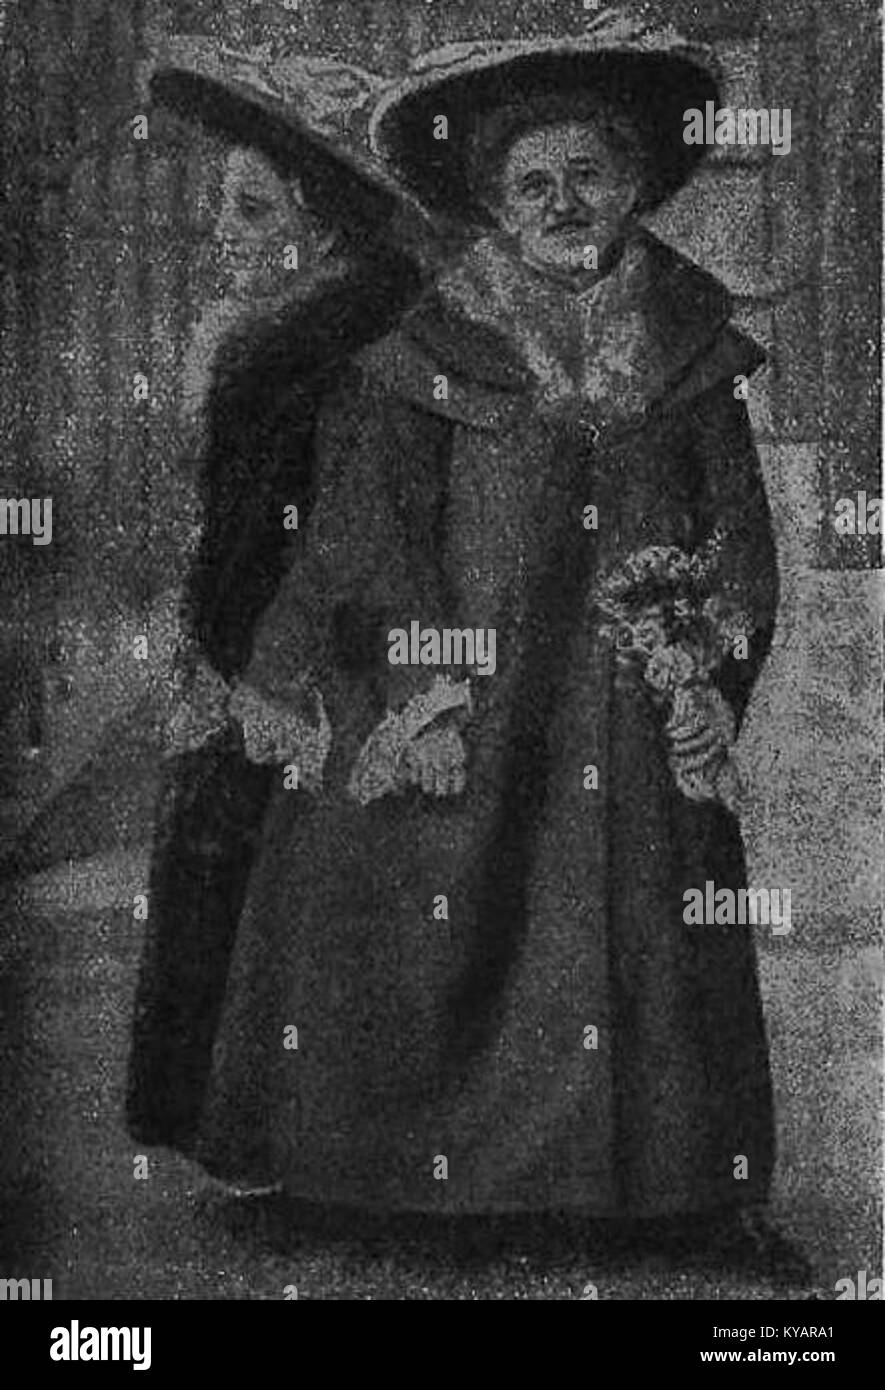 Róża ich Józefa Błażkówny (siamesische Zwillinge,-1904) Stockfoto